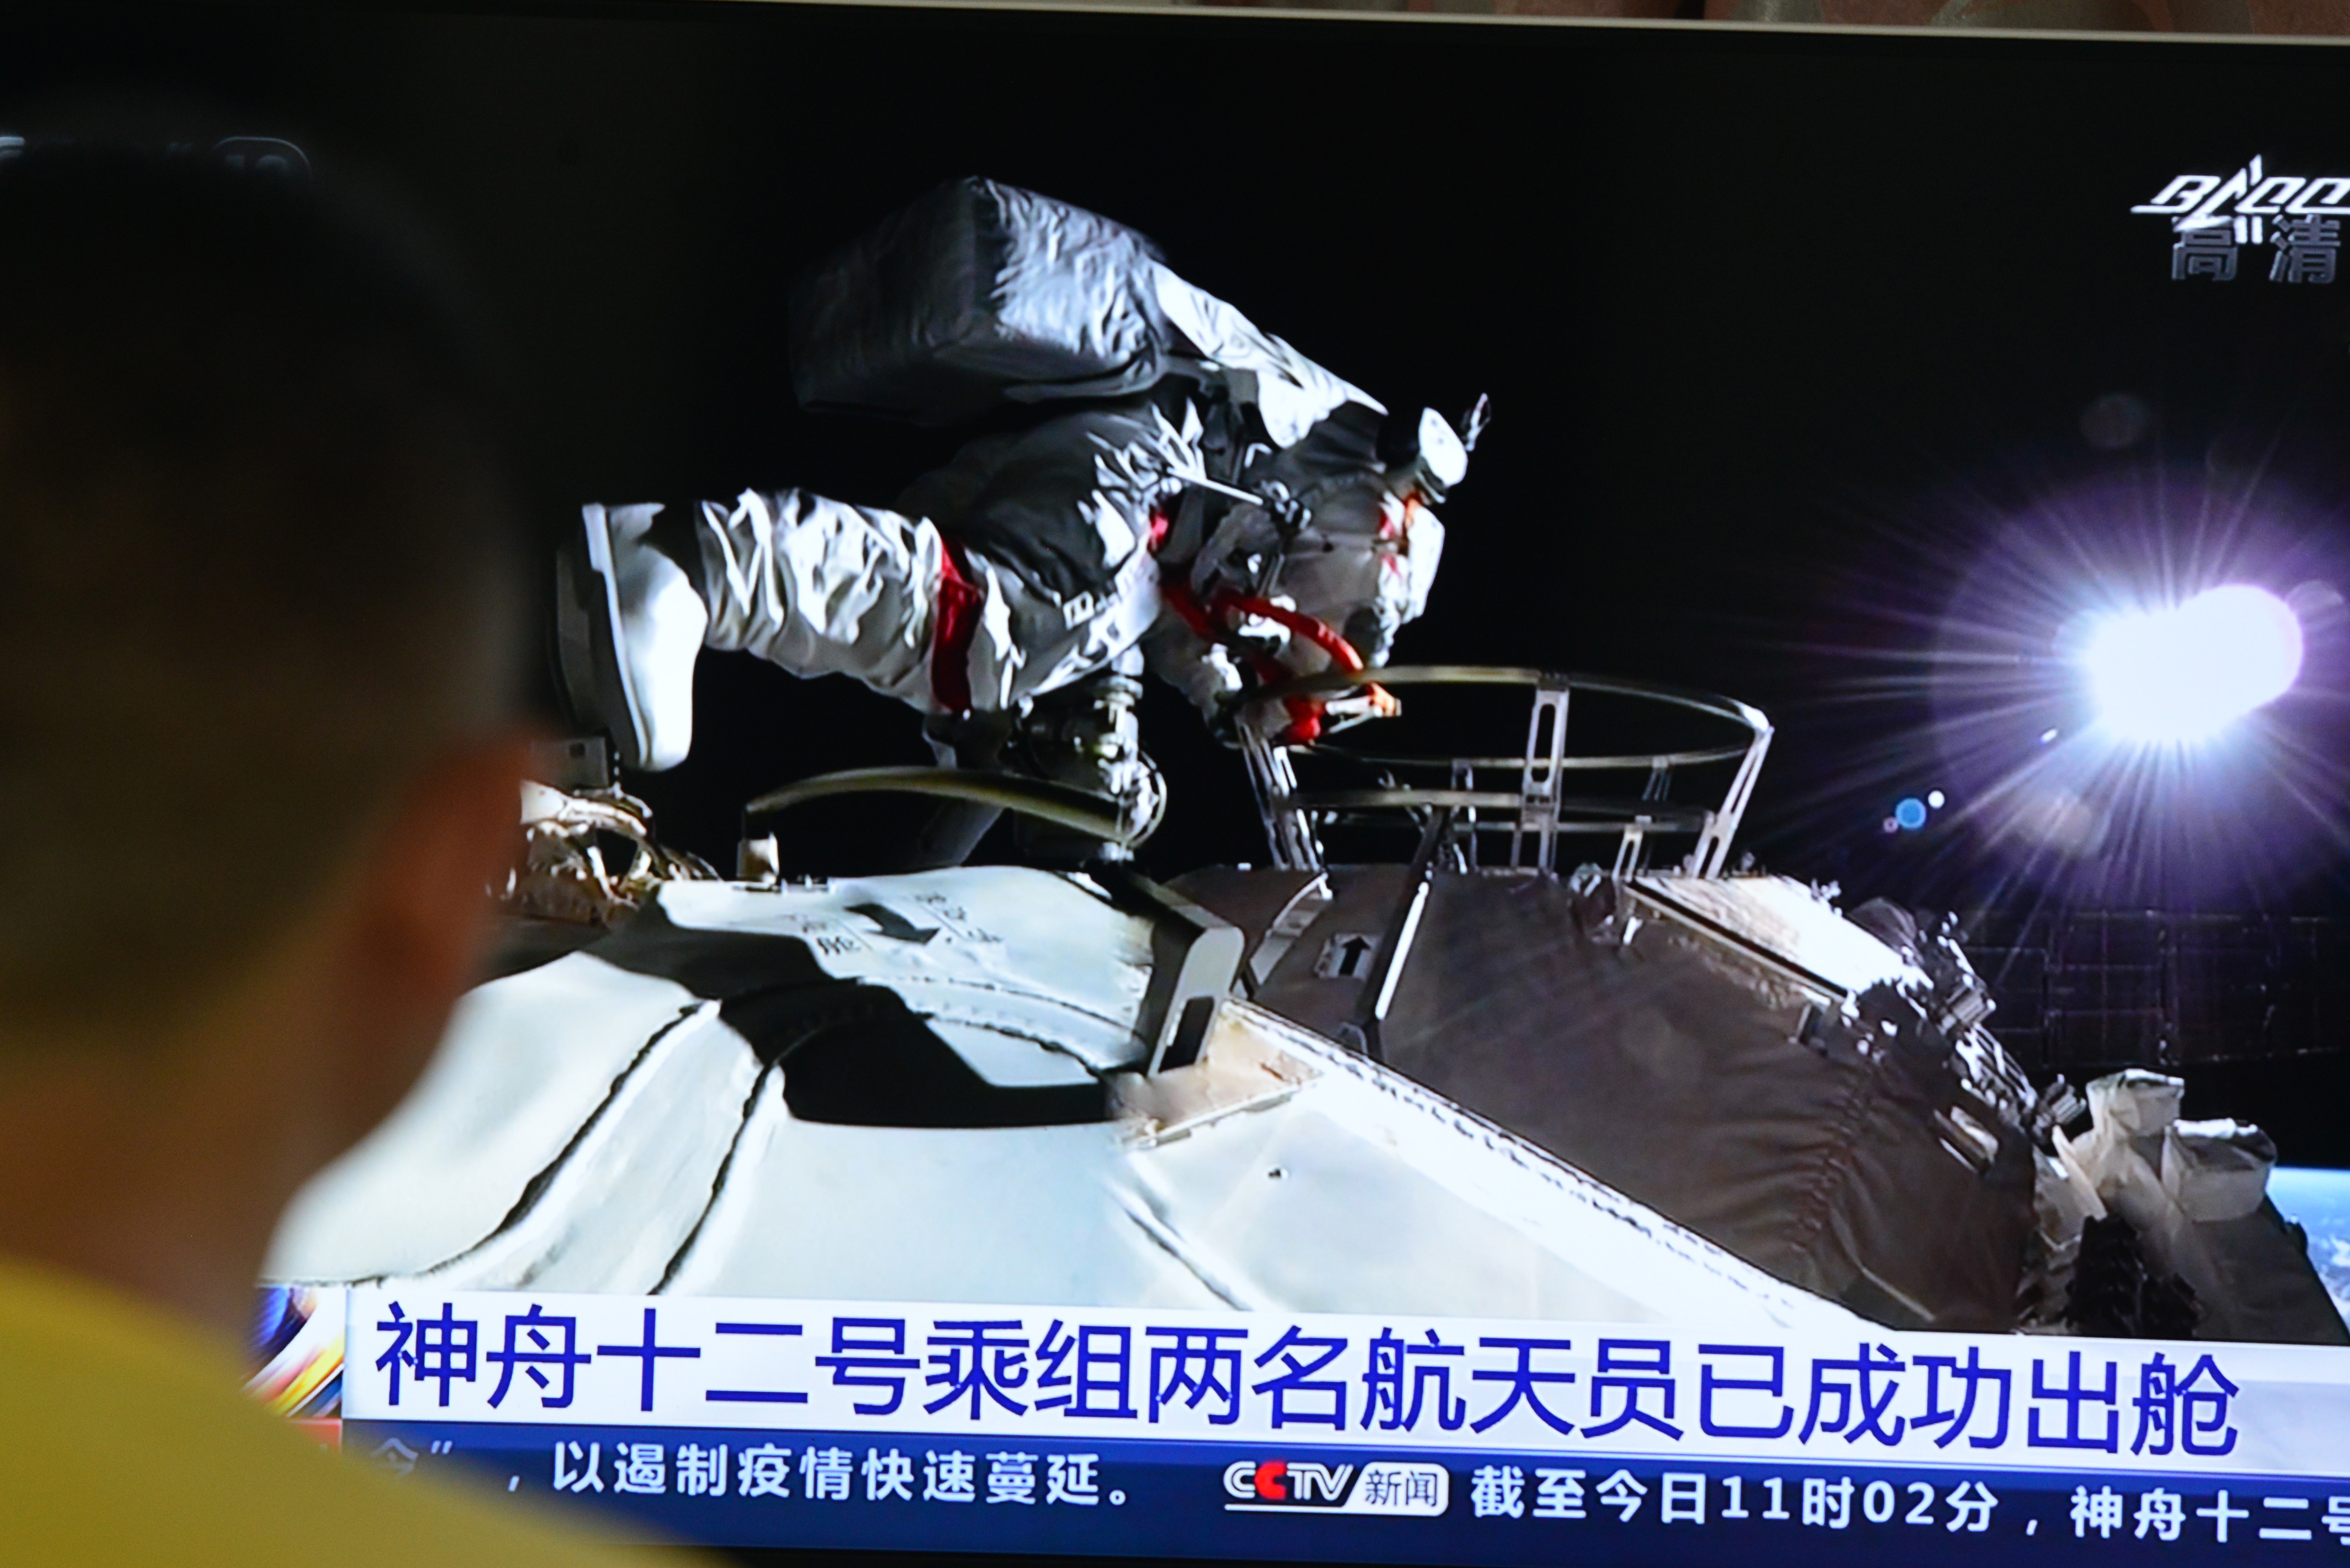 Astronautas chineses completam primeira caminhada espacial na nova estação orbital (Foto: Sheldon cooper/SOPA Images via ZUMA Wire/Reuters)